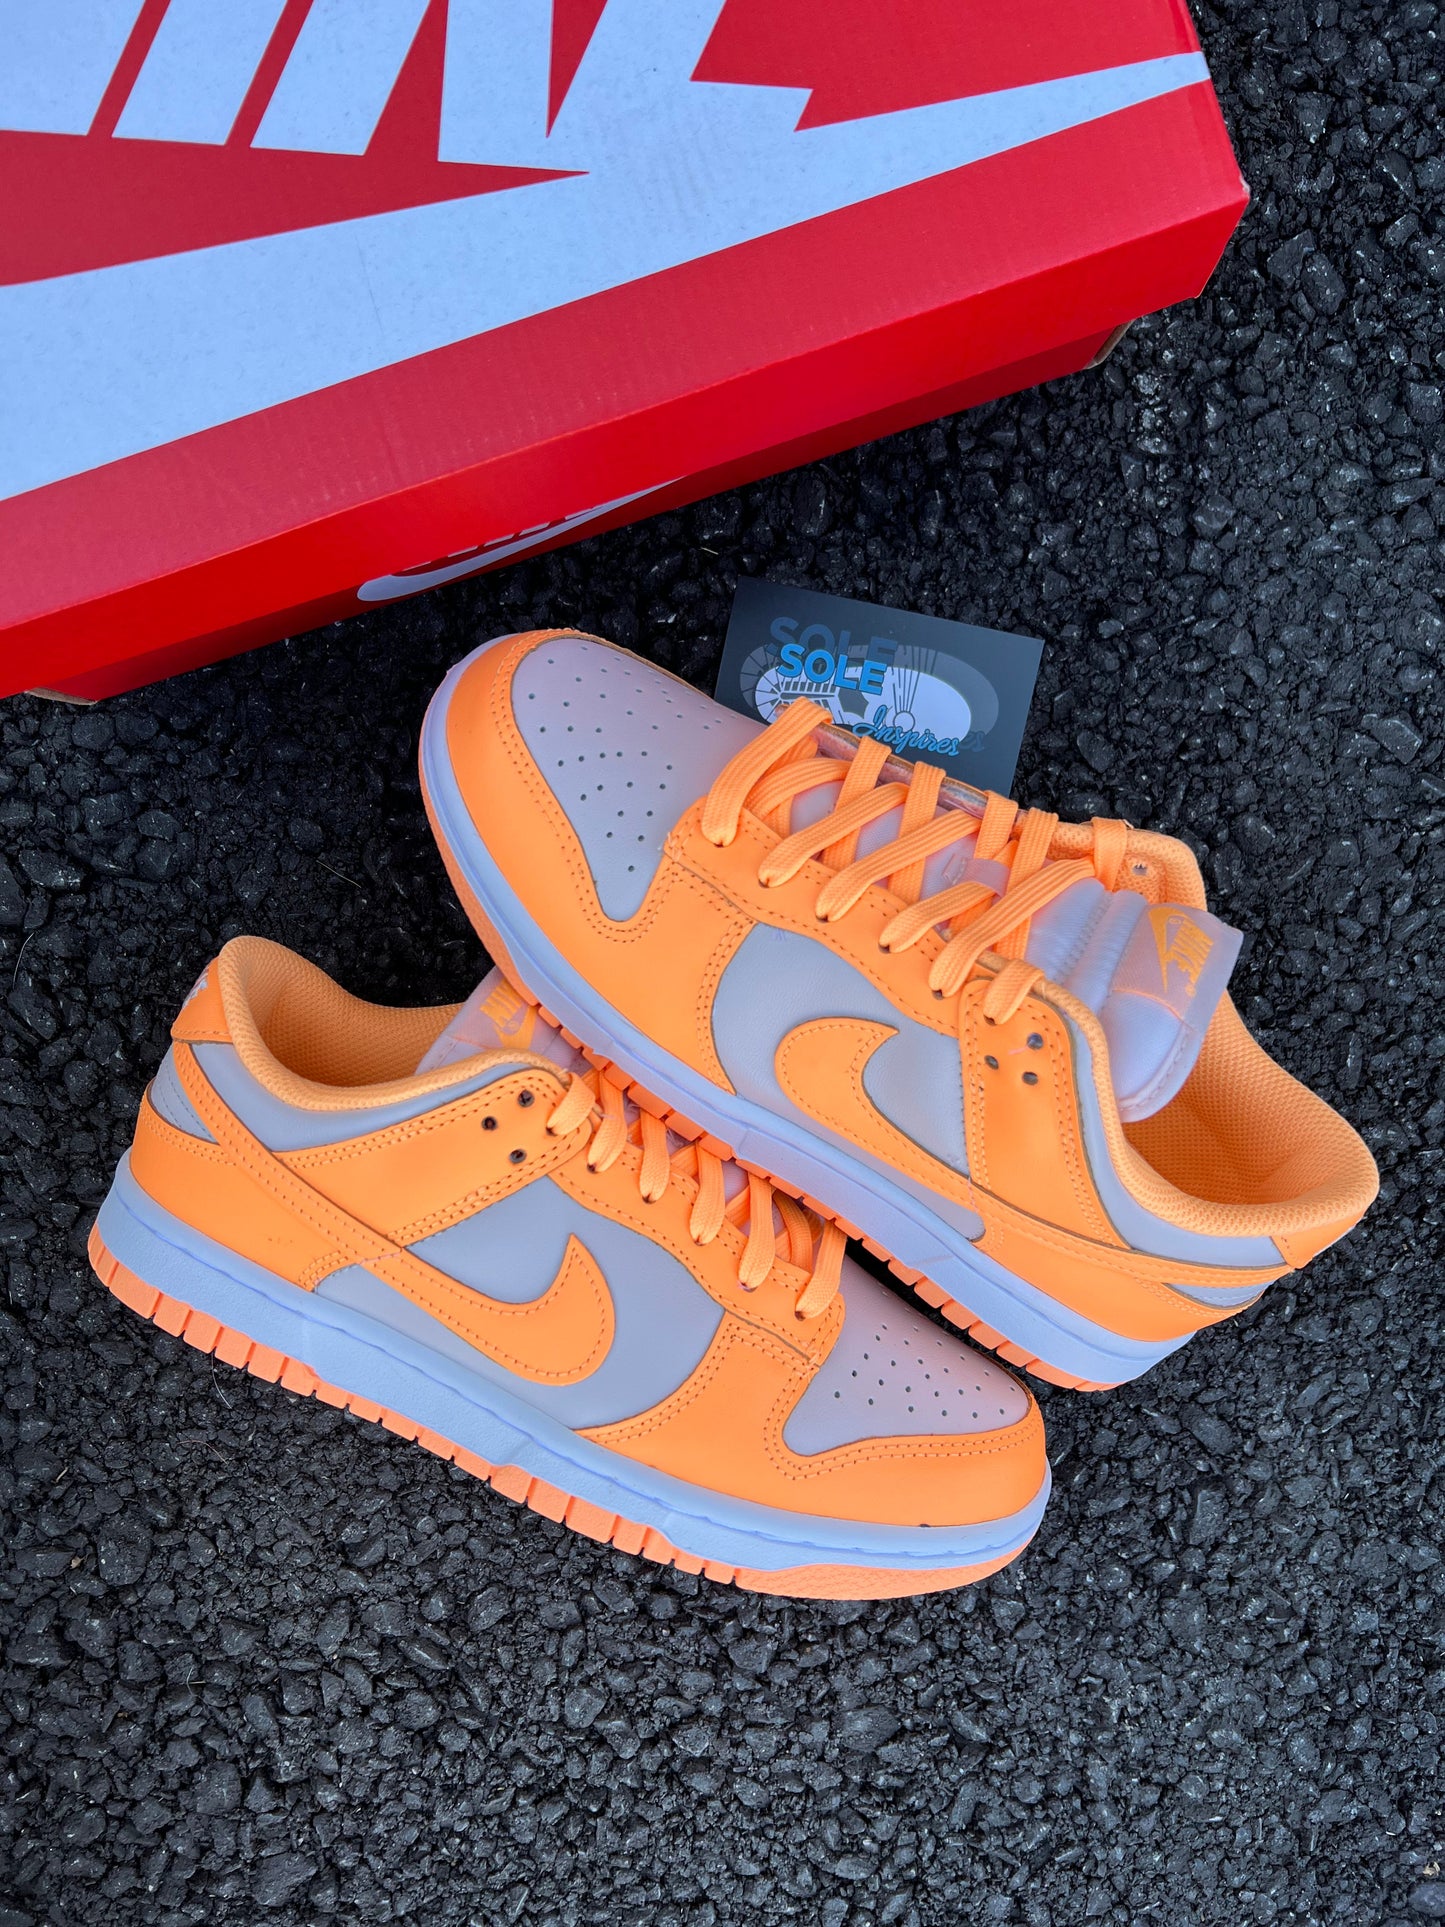 Nike Dunk Low “Peach Cream” (GS)